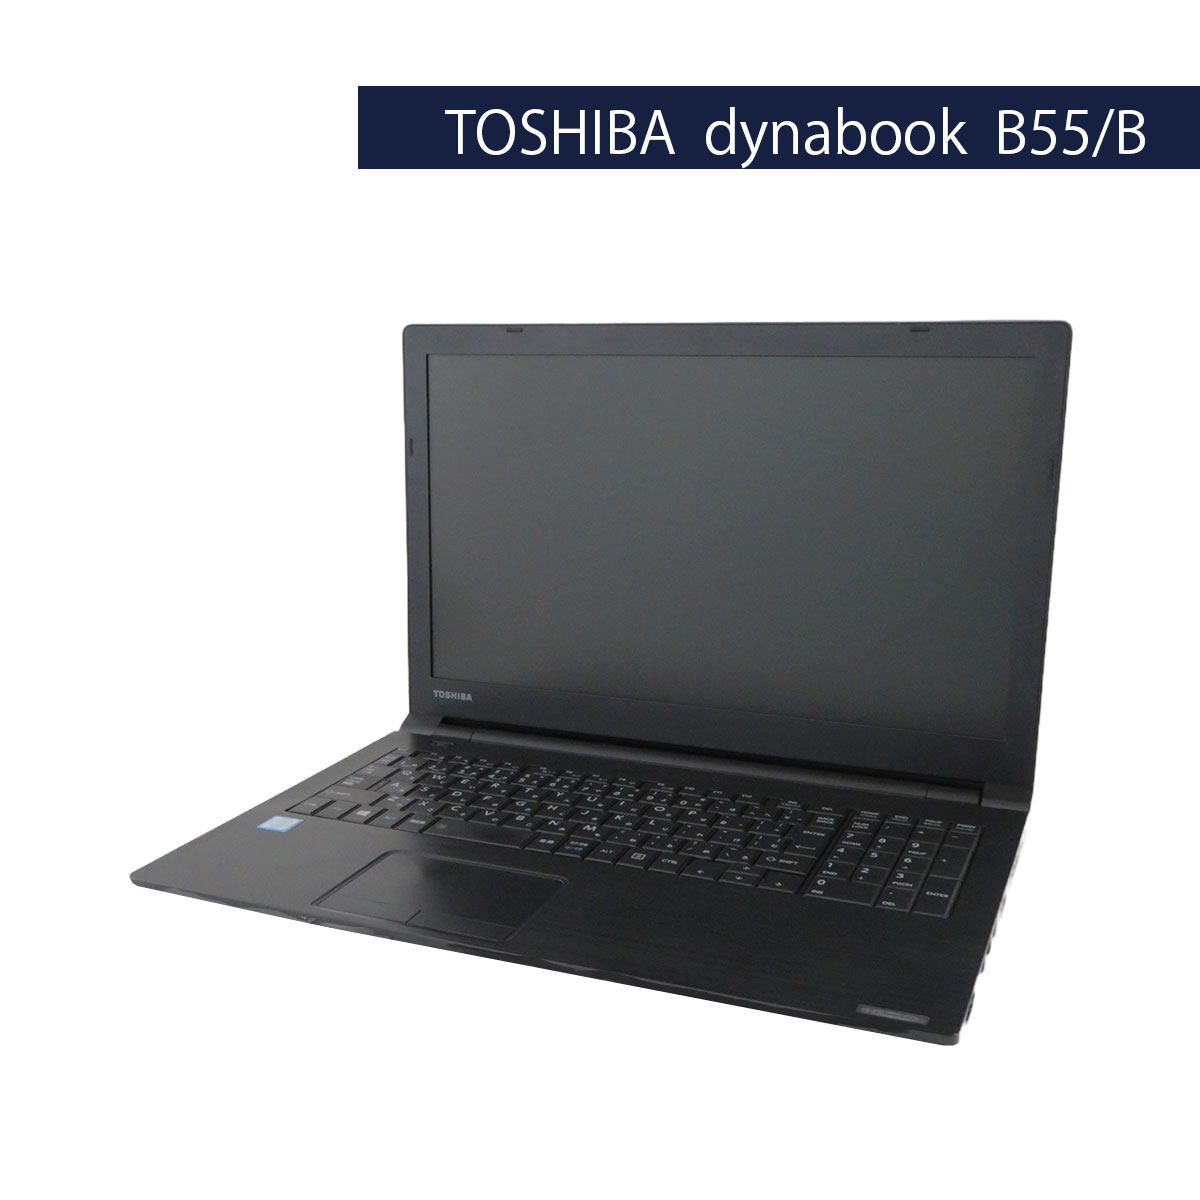 TOSHIBA dynabook B55/B Core i3 6100U 8GB 500GB (Win10Pro)